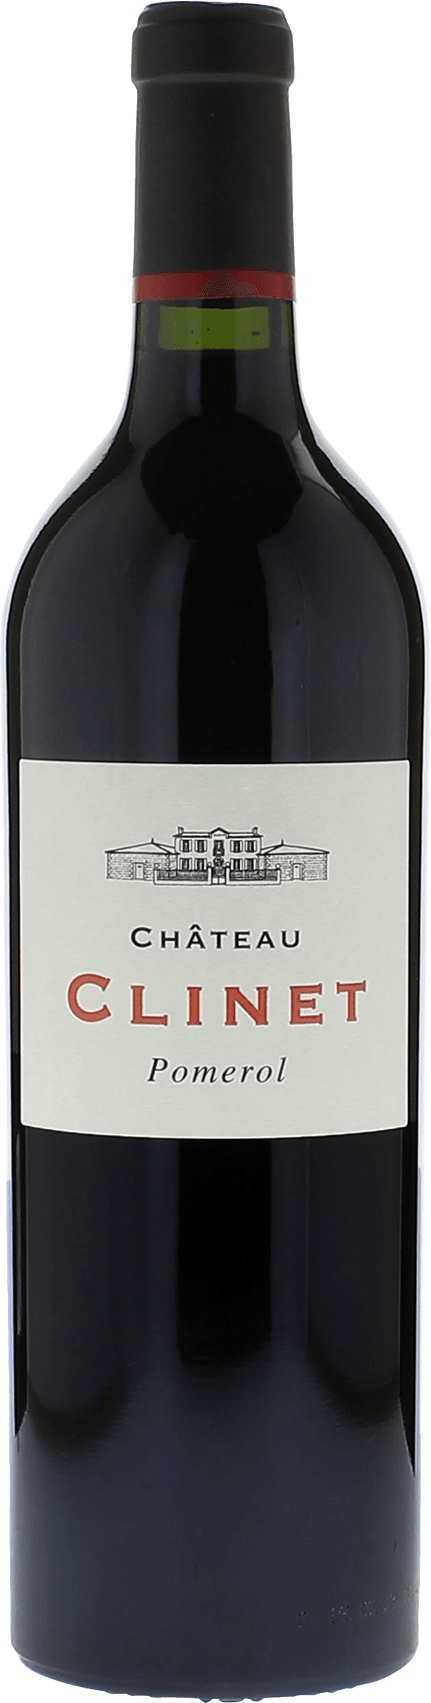 Clinet 2015  Pomerol, Bordeaux rouge